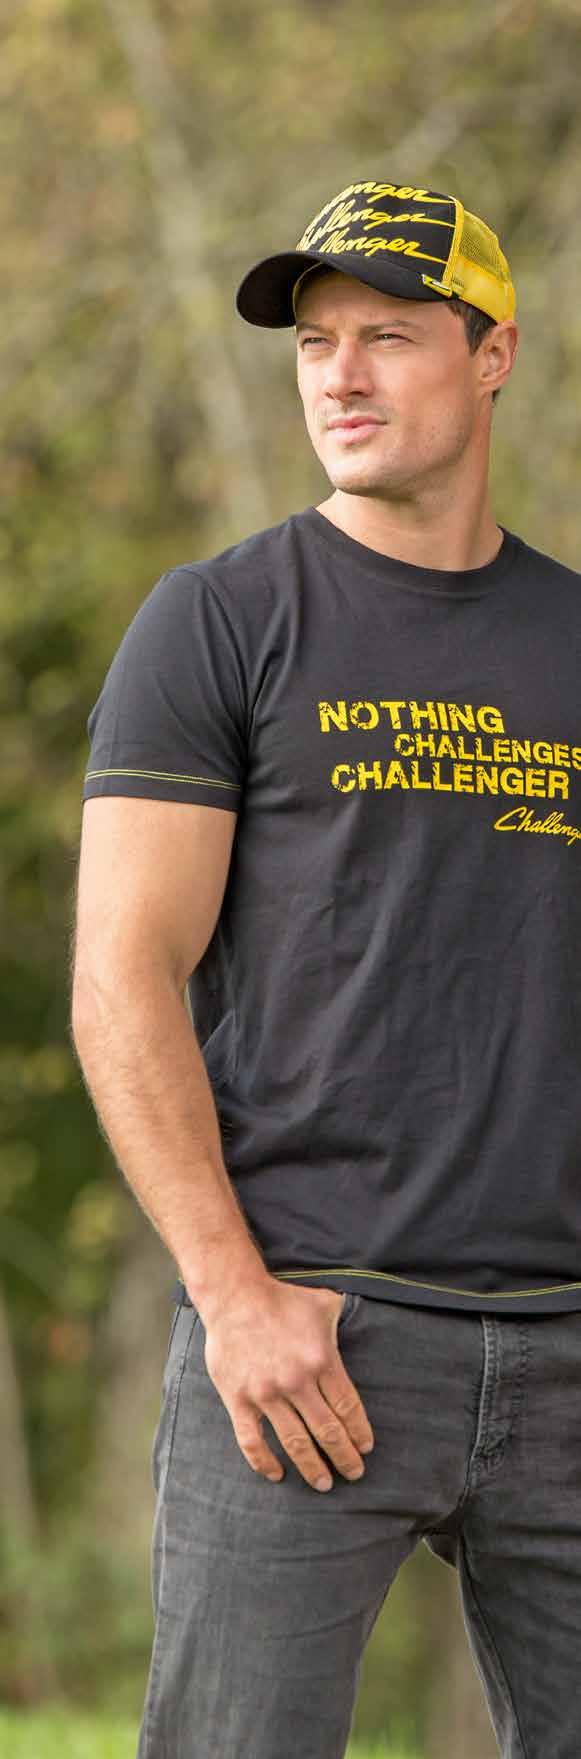 CHALLENGER KLEIDUNG 11 [04] [05] 04 CHALLENGER-CAP, TRUCKER Trendige Trucker-Cap mit gelben